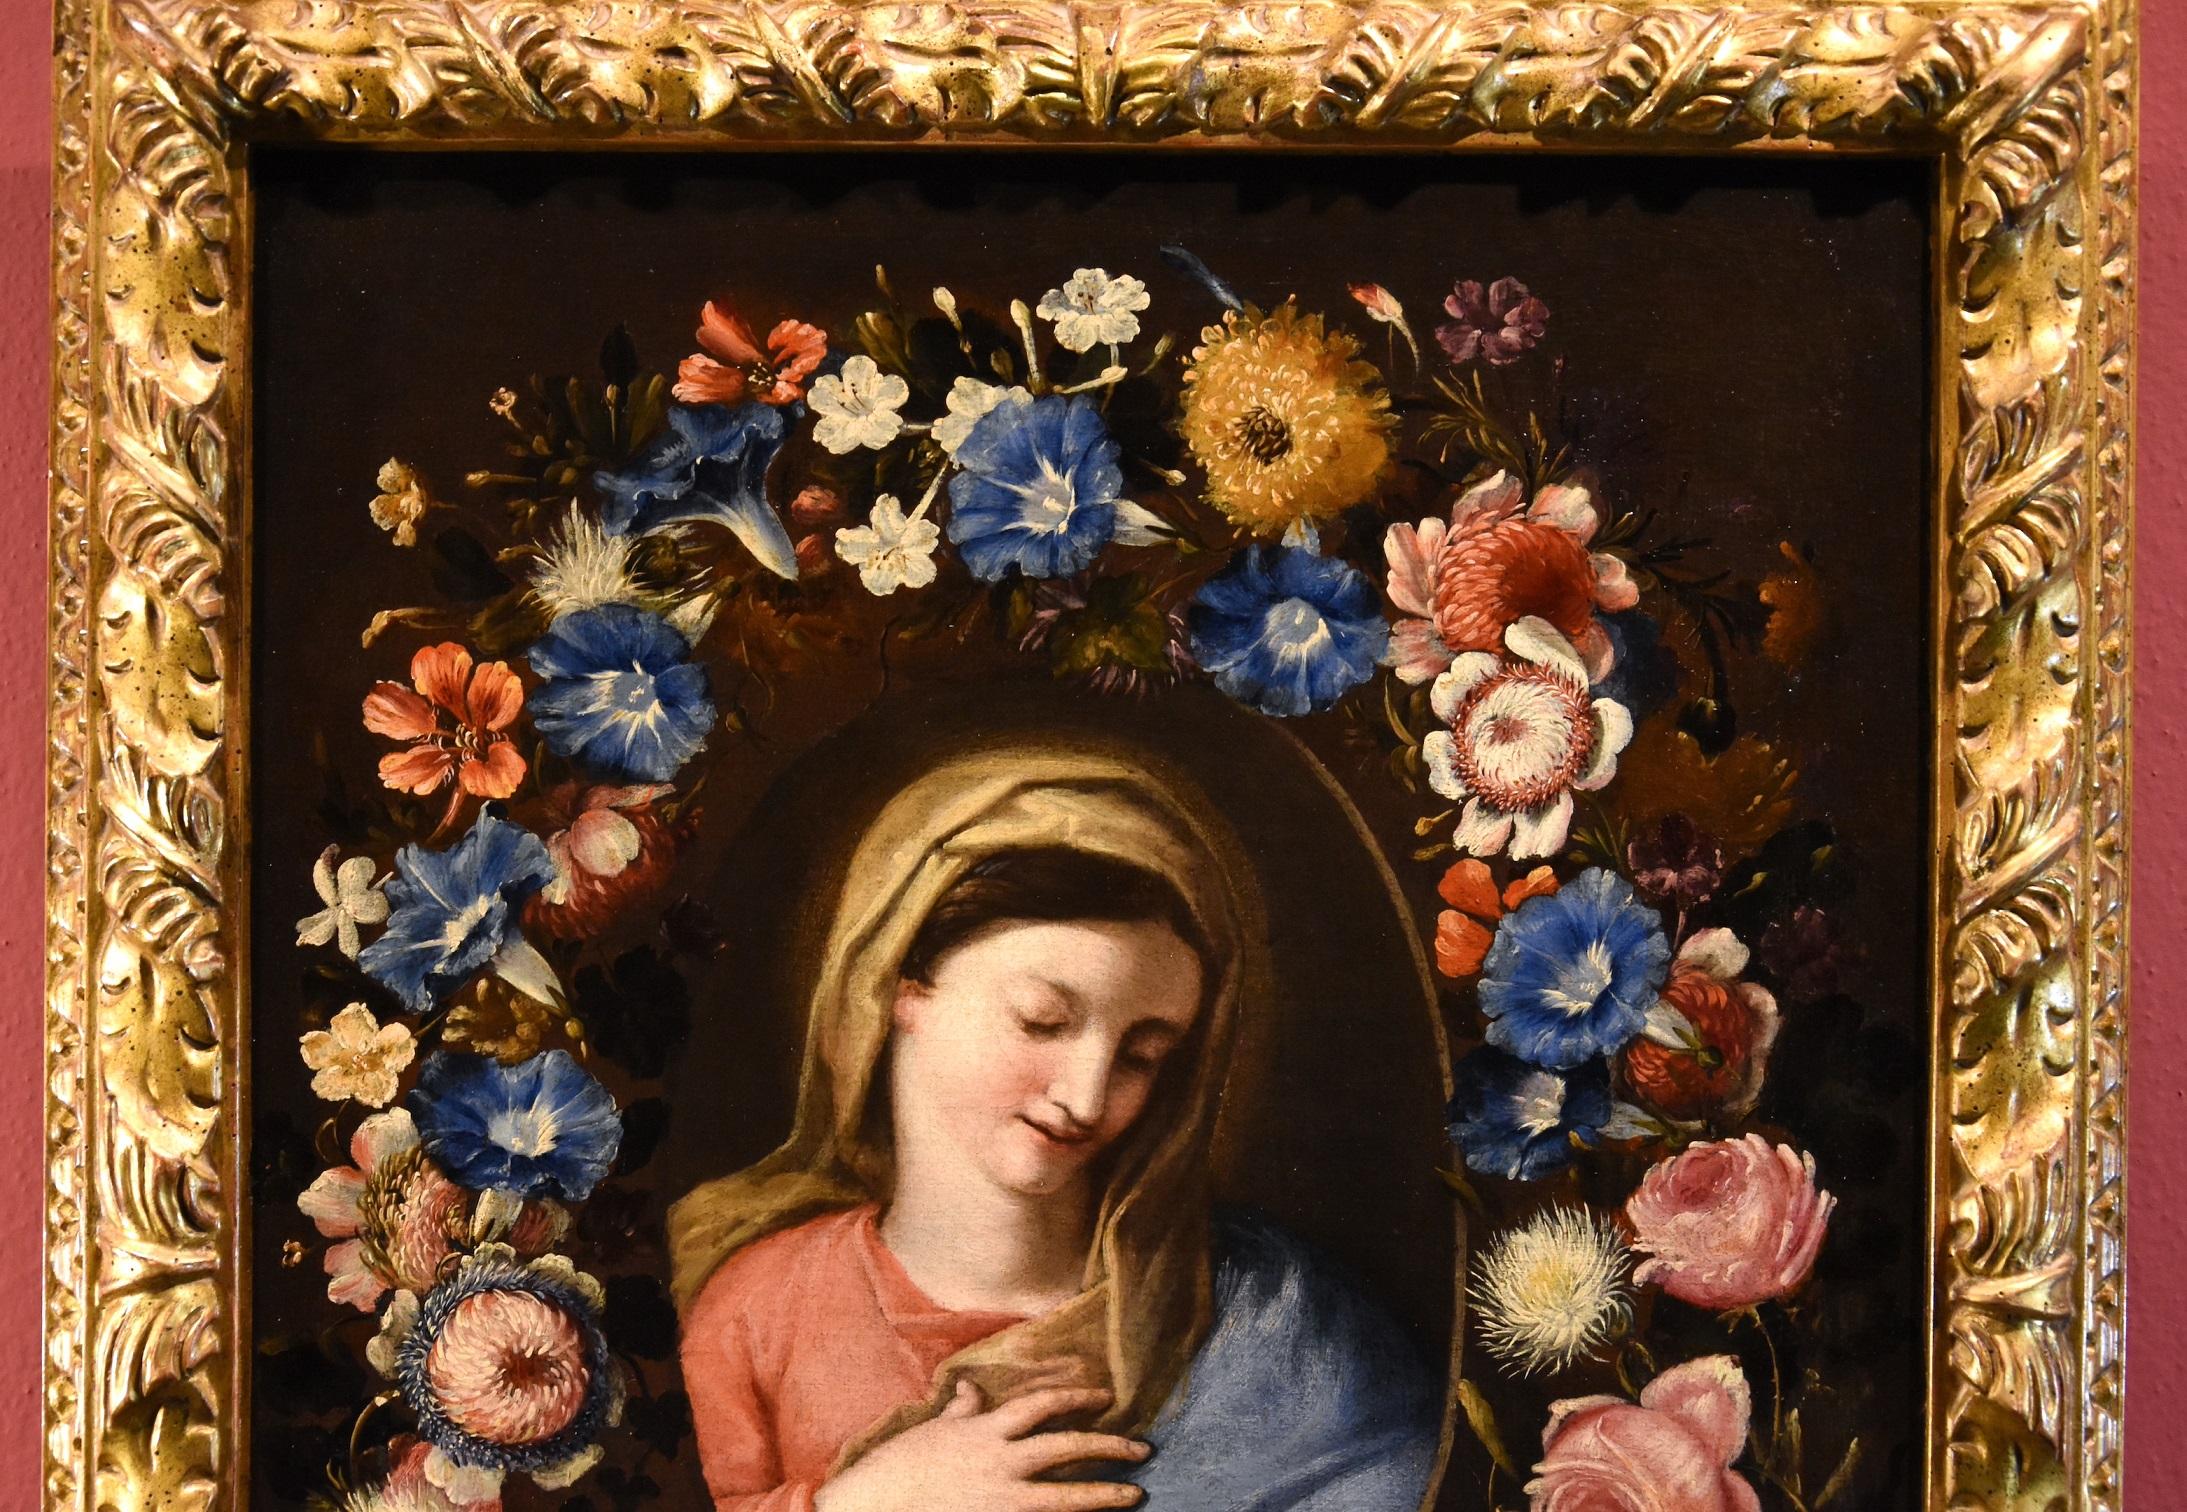 Blumengirlande mit einem Bildnis der Jungfrau Maria
Francesco Trevisani (Capodistria 1656 - Rom 1746) und Niccolò Stanchi (Rom 1623 - 1690), zurückzuführen

Öl auf Leinwand
66 x 49 cm. - Im Rahmen 76 x 60 cm.

Das schöne Gemälde, das wir Ihnen